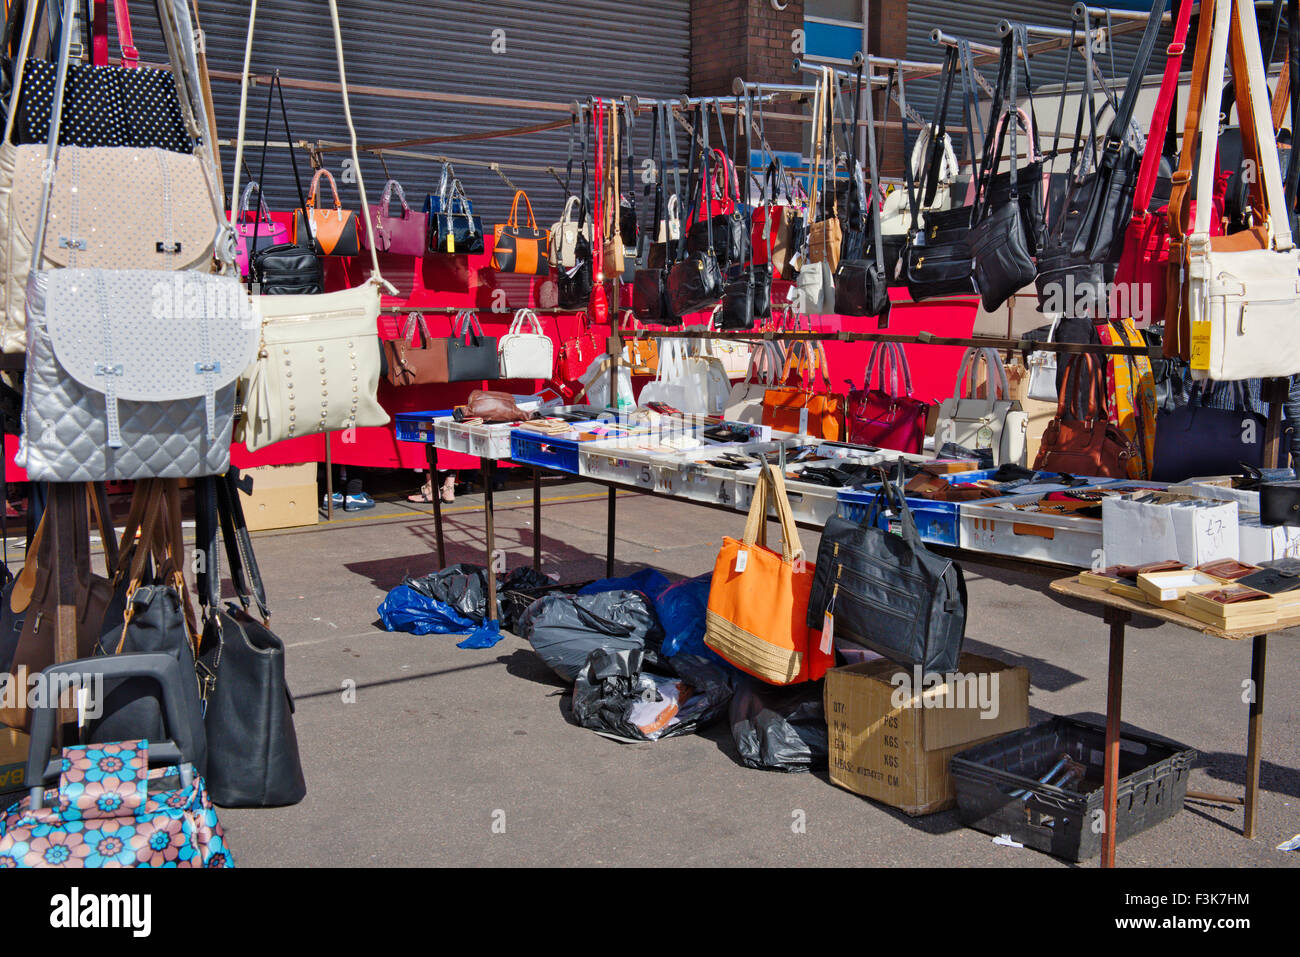 Décrochage du marché de plein air de femme vente de sacs et sacs à main, Bristol, Angleterre Banque D'Images